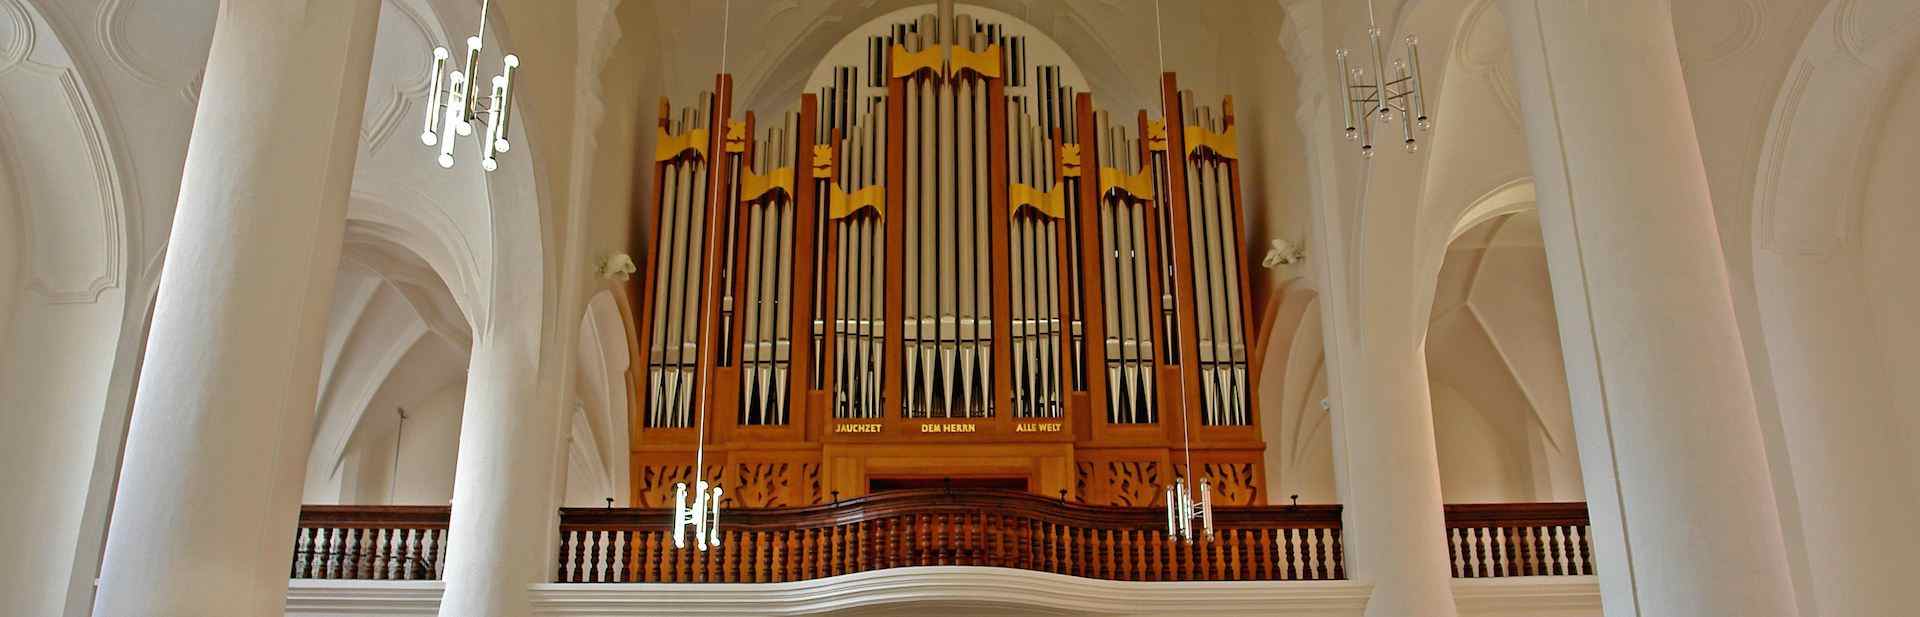 orgelslide5